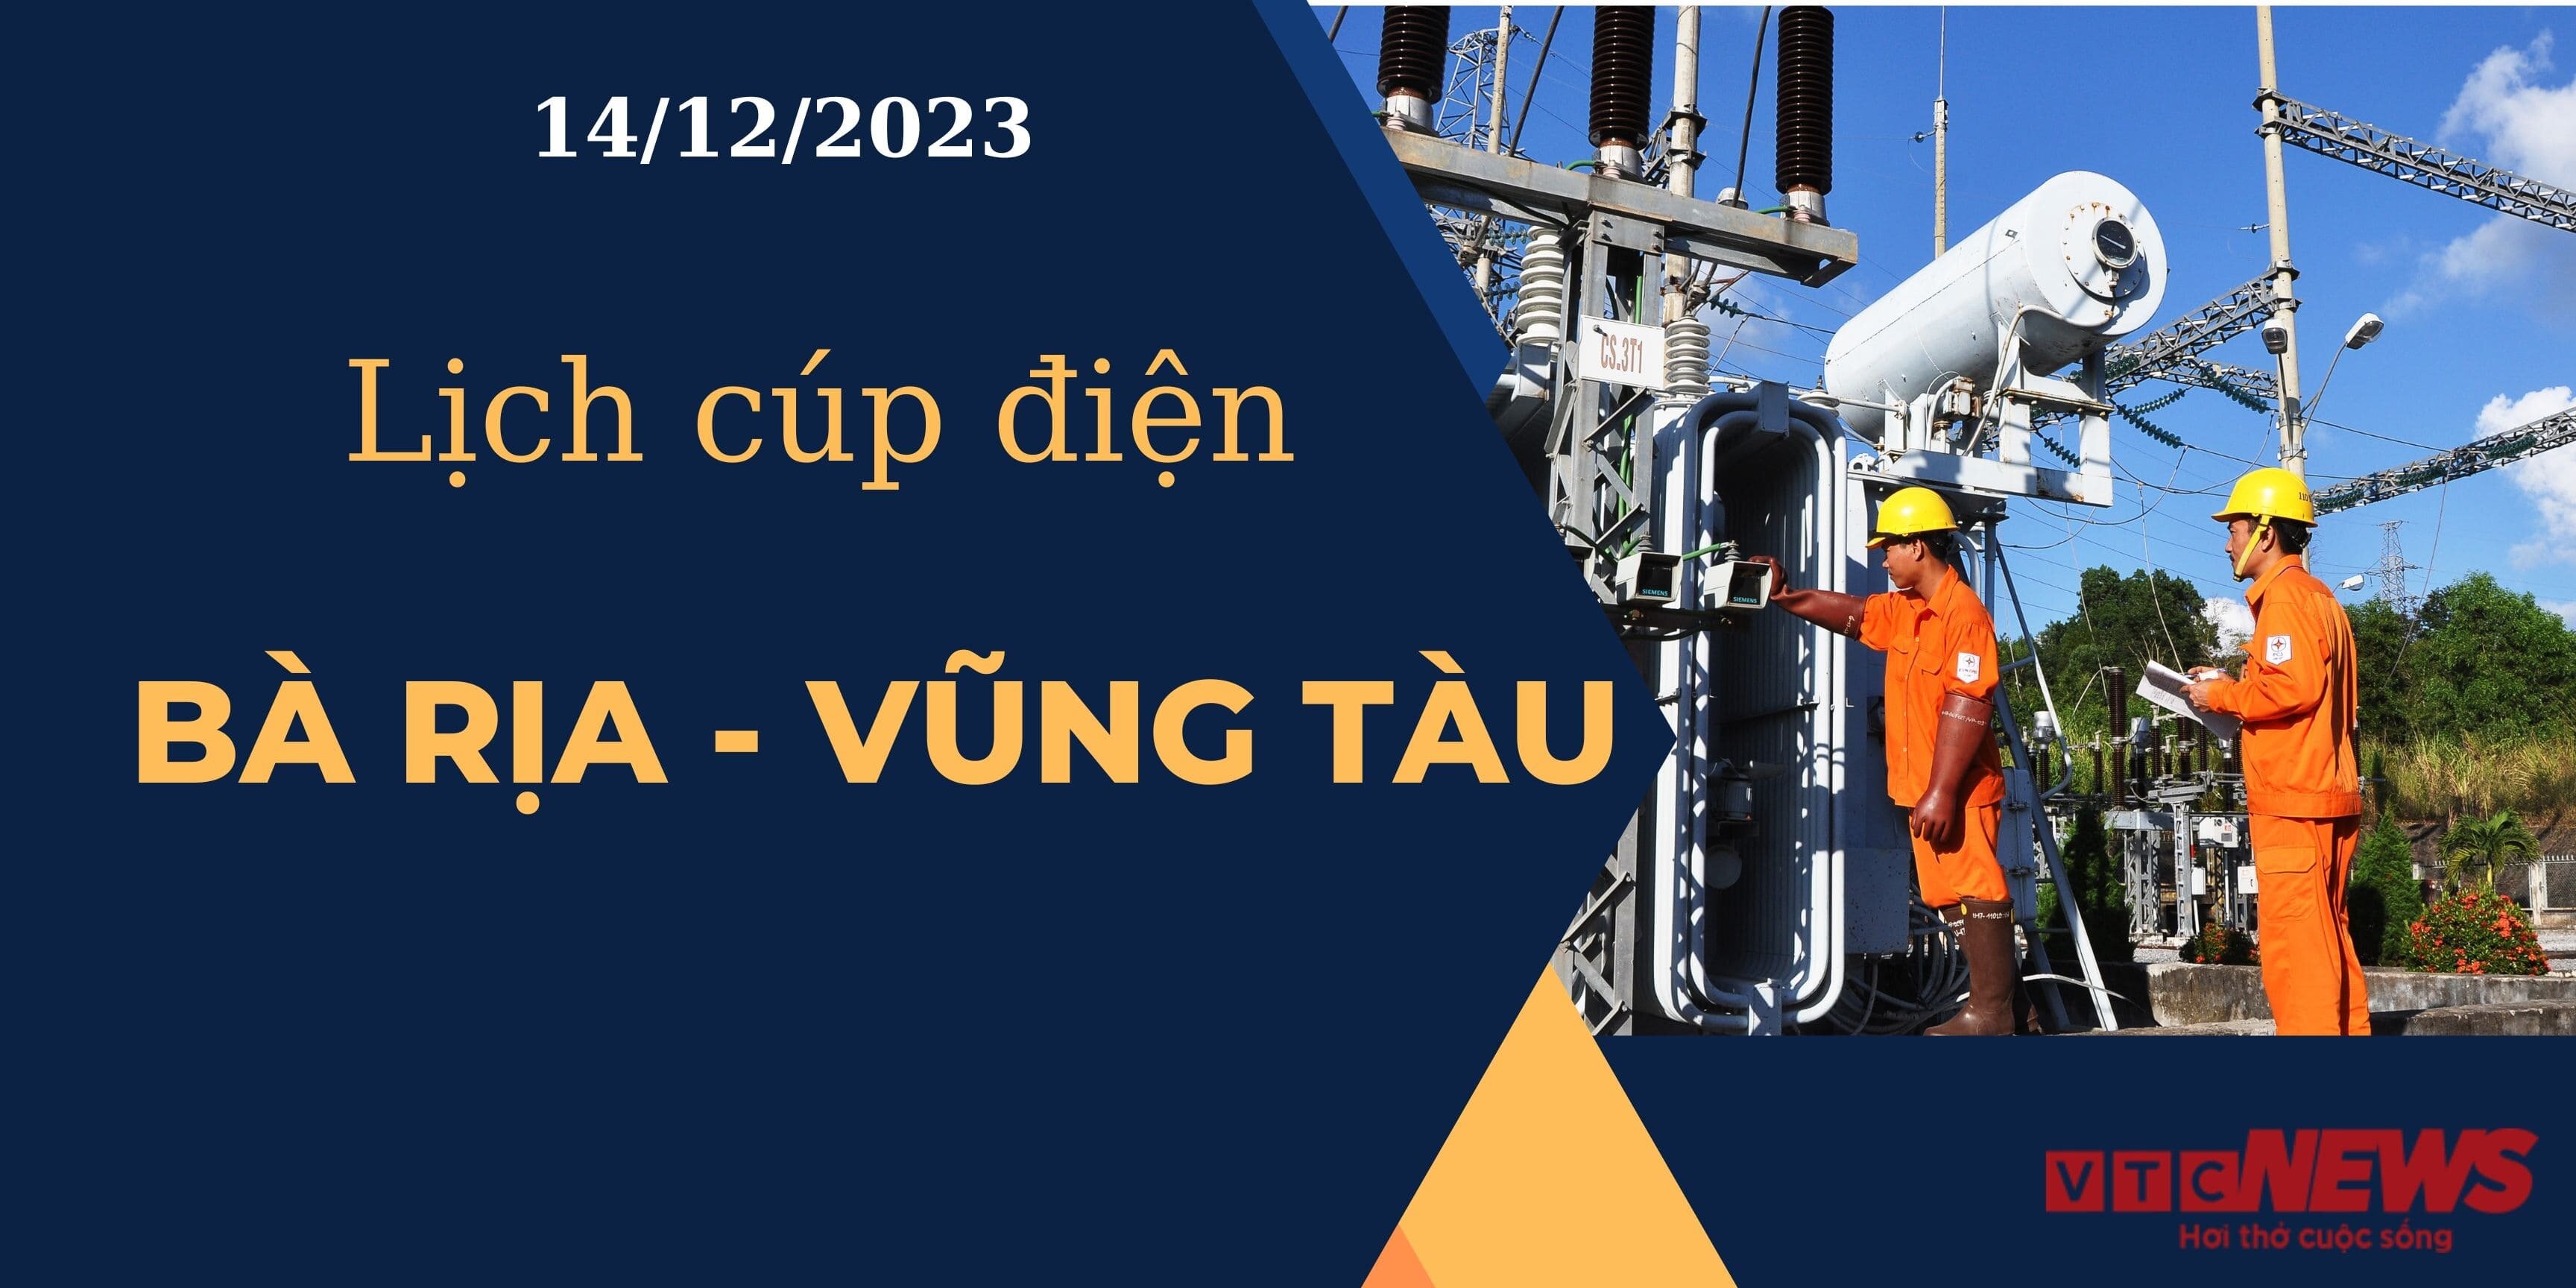 Lịch cúp điện hôm nay tại Bà Rịa - Vũng Tàu ngày 14/12/2023